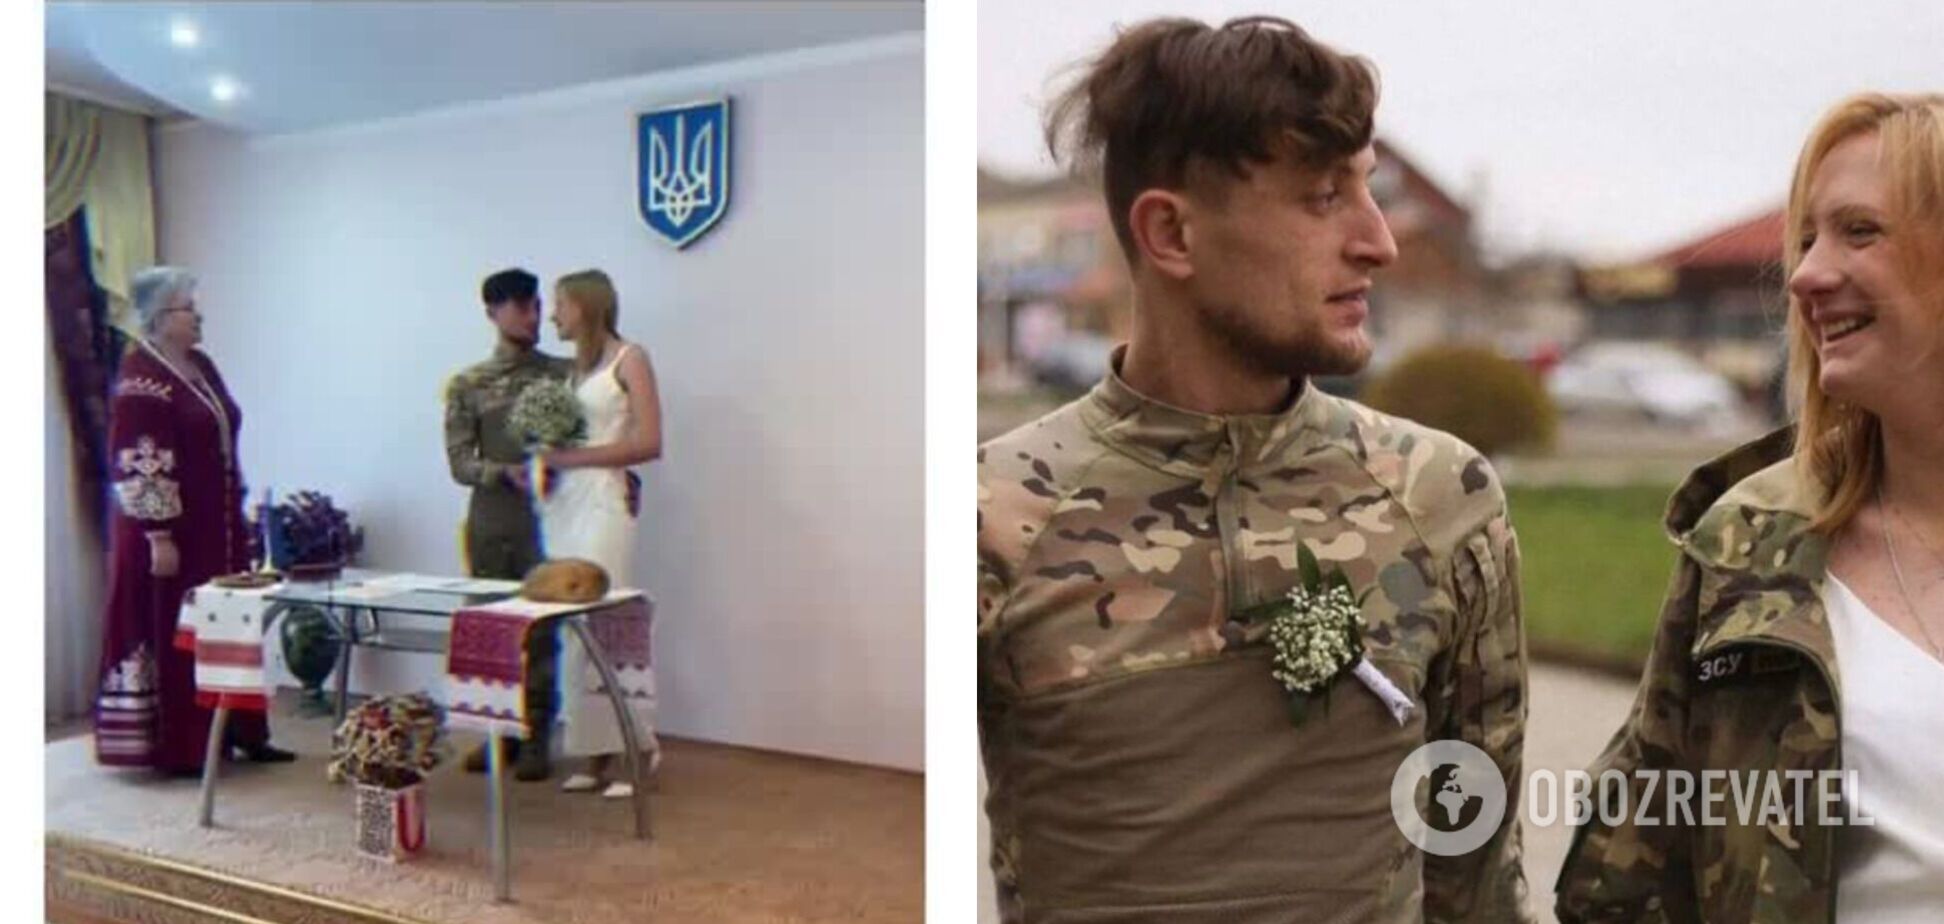 Герой мемів 'Чоткий паца', який захищає Україну, одружився. Кадри з весілля